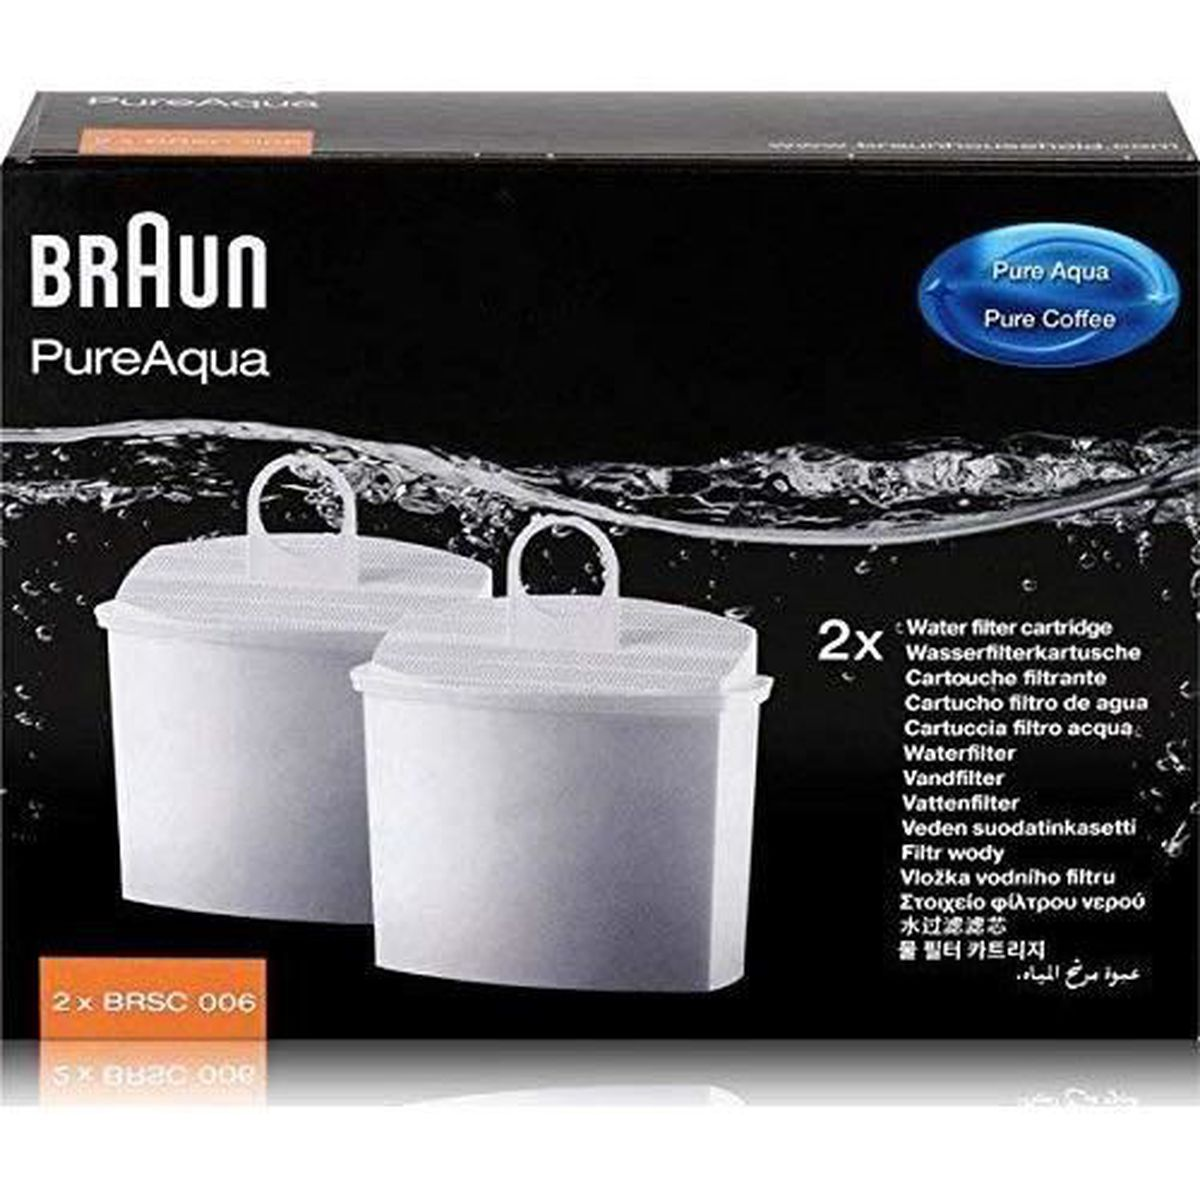 BRSC006 - Füllstoff Kaffeemaschine BRAUN für * Wasserfilter 2 Kartusche